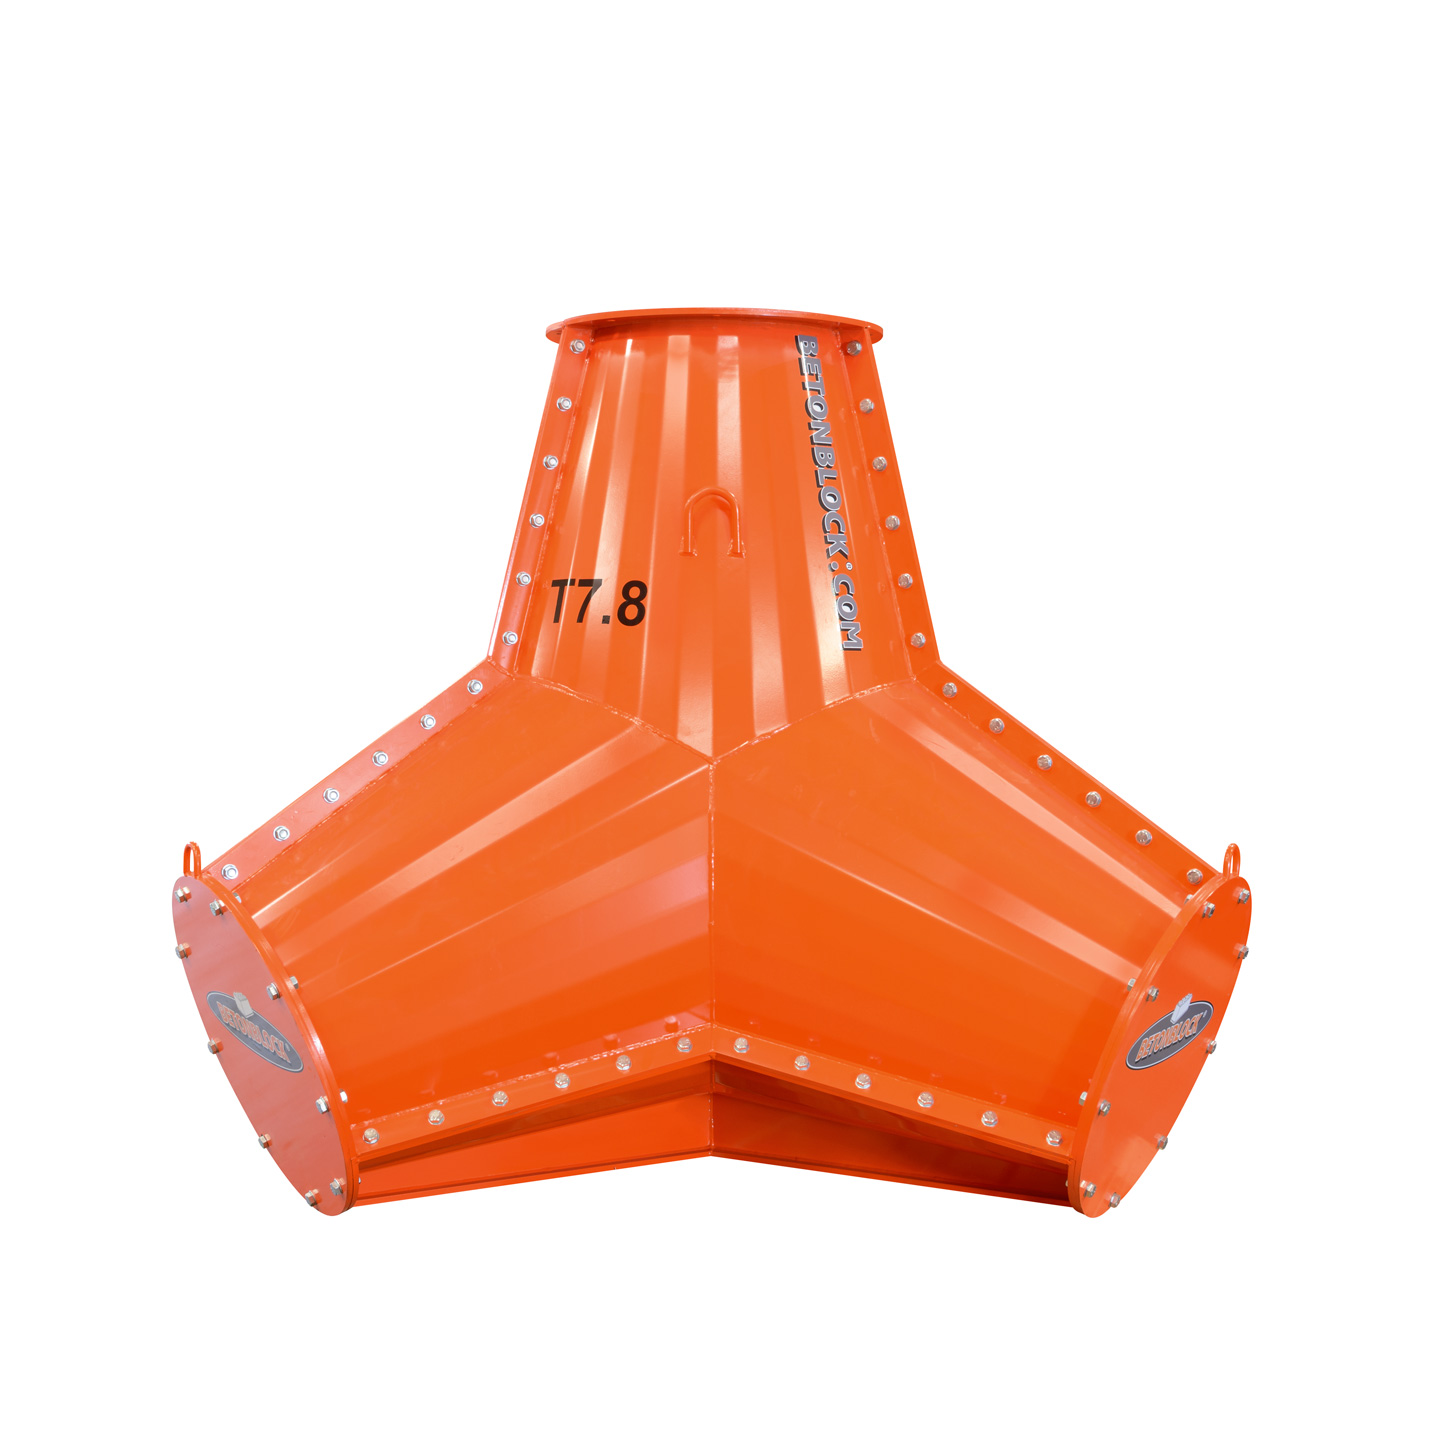 Stampo per tetrapodi in acciaio arancione per realizzare grandi tetrapodi in cemento da 7800 kg